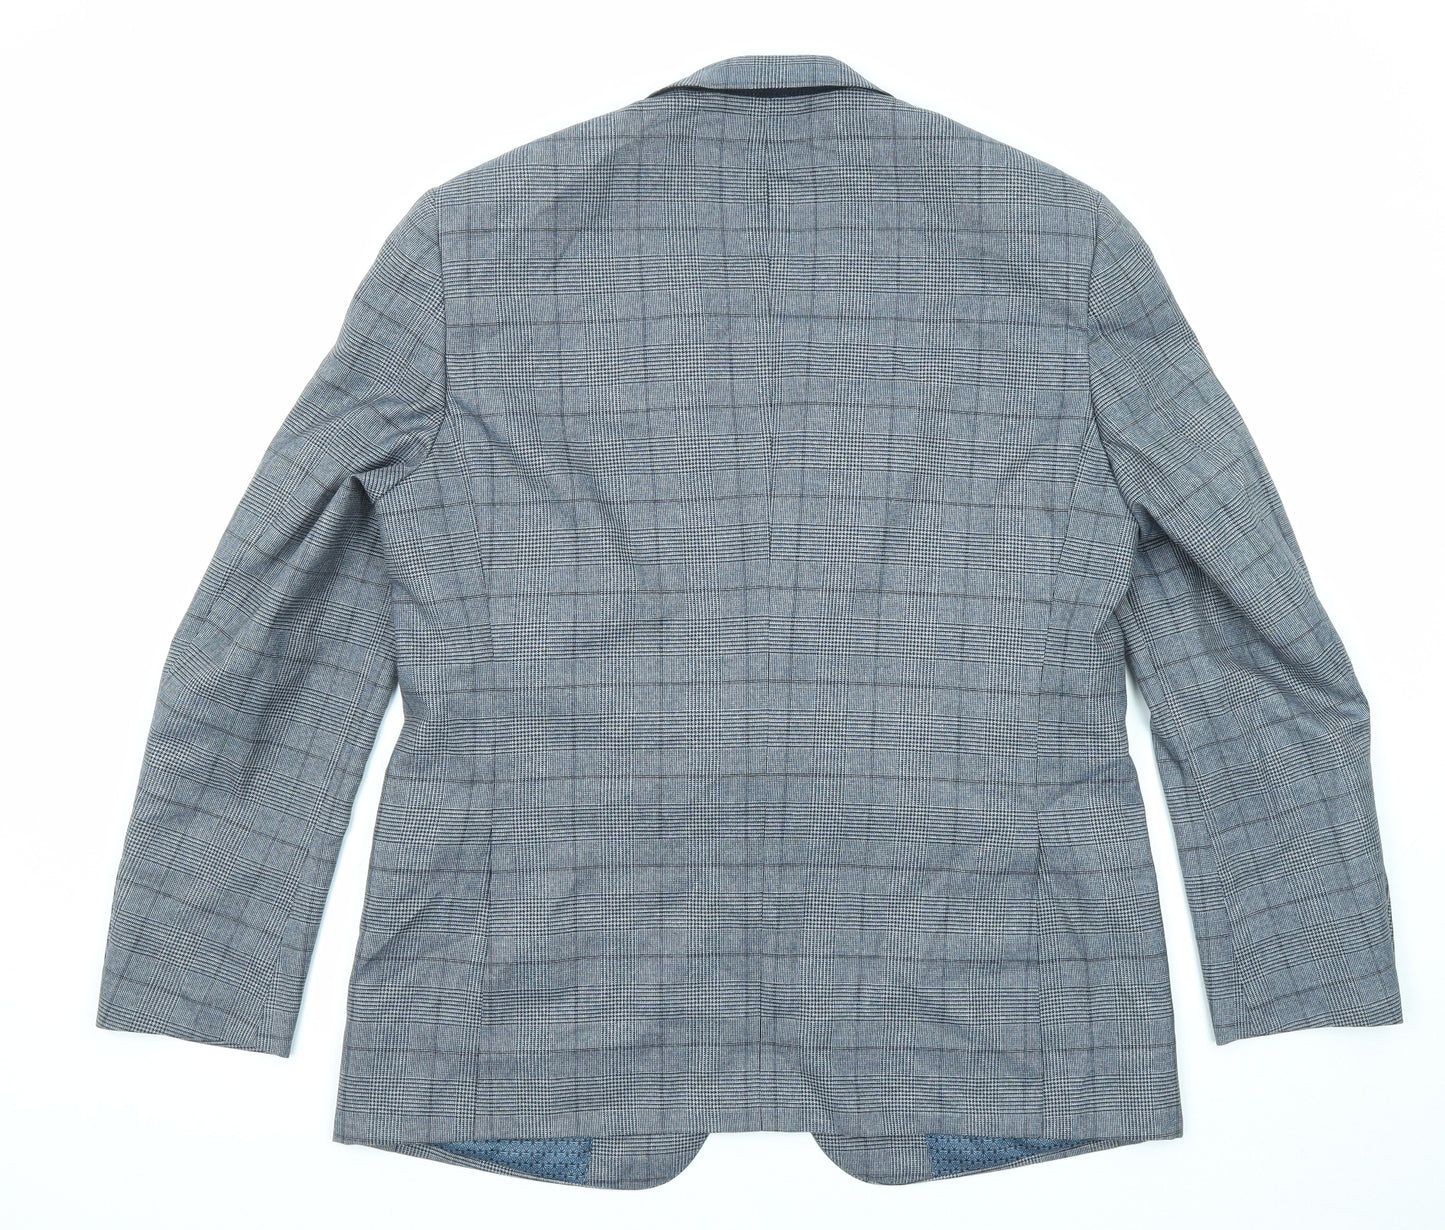 Skopes Mens Blue Plaid Polyester Jacket Suit Jacket Size 42 Regular